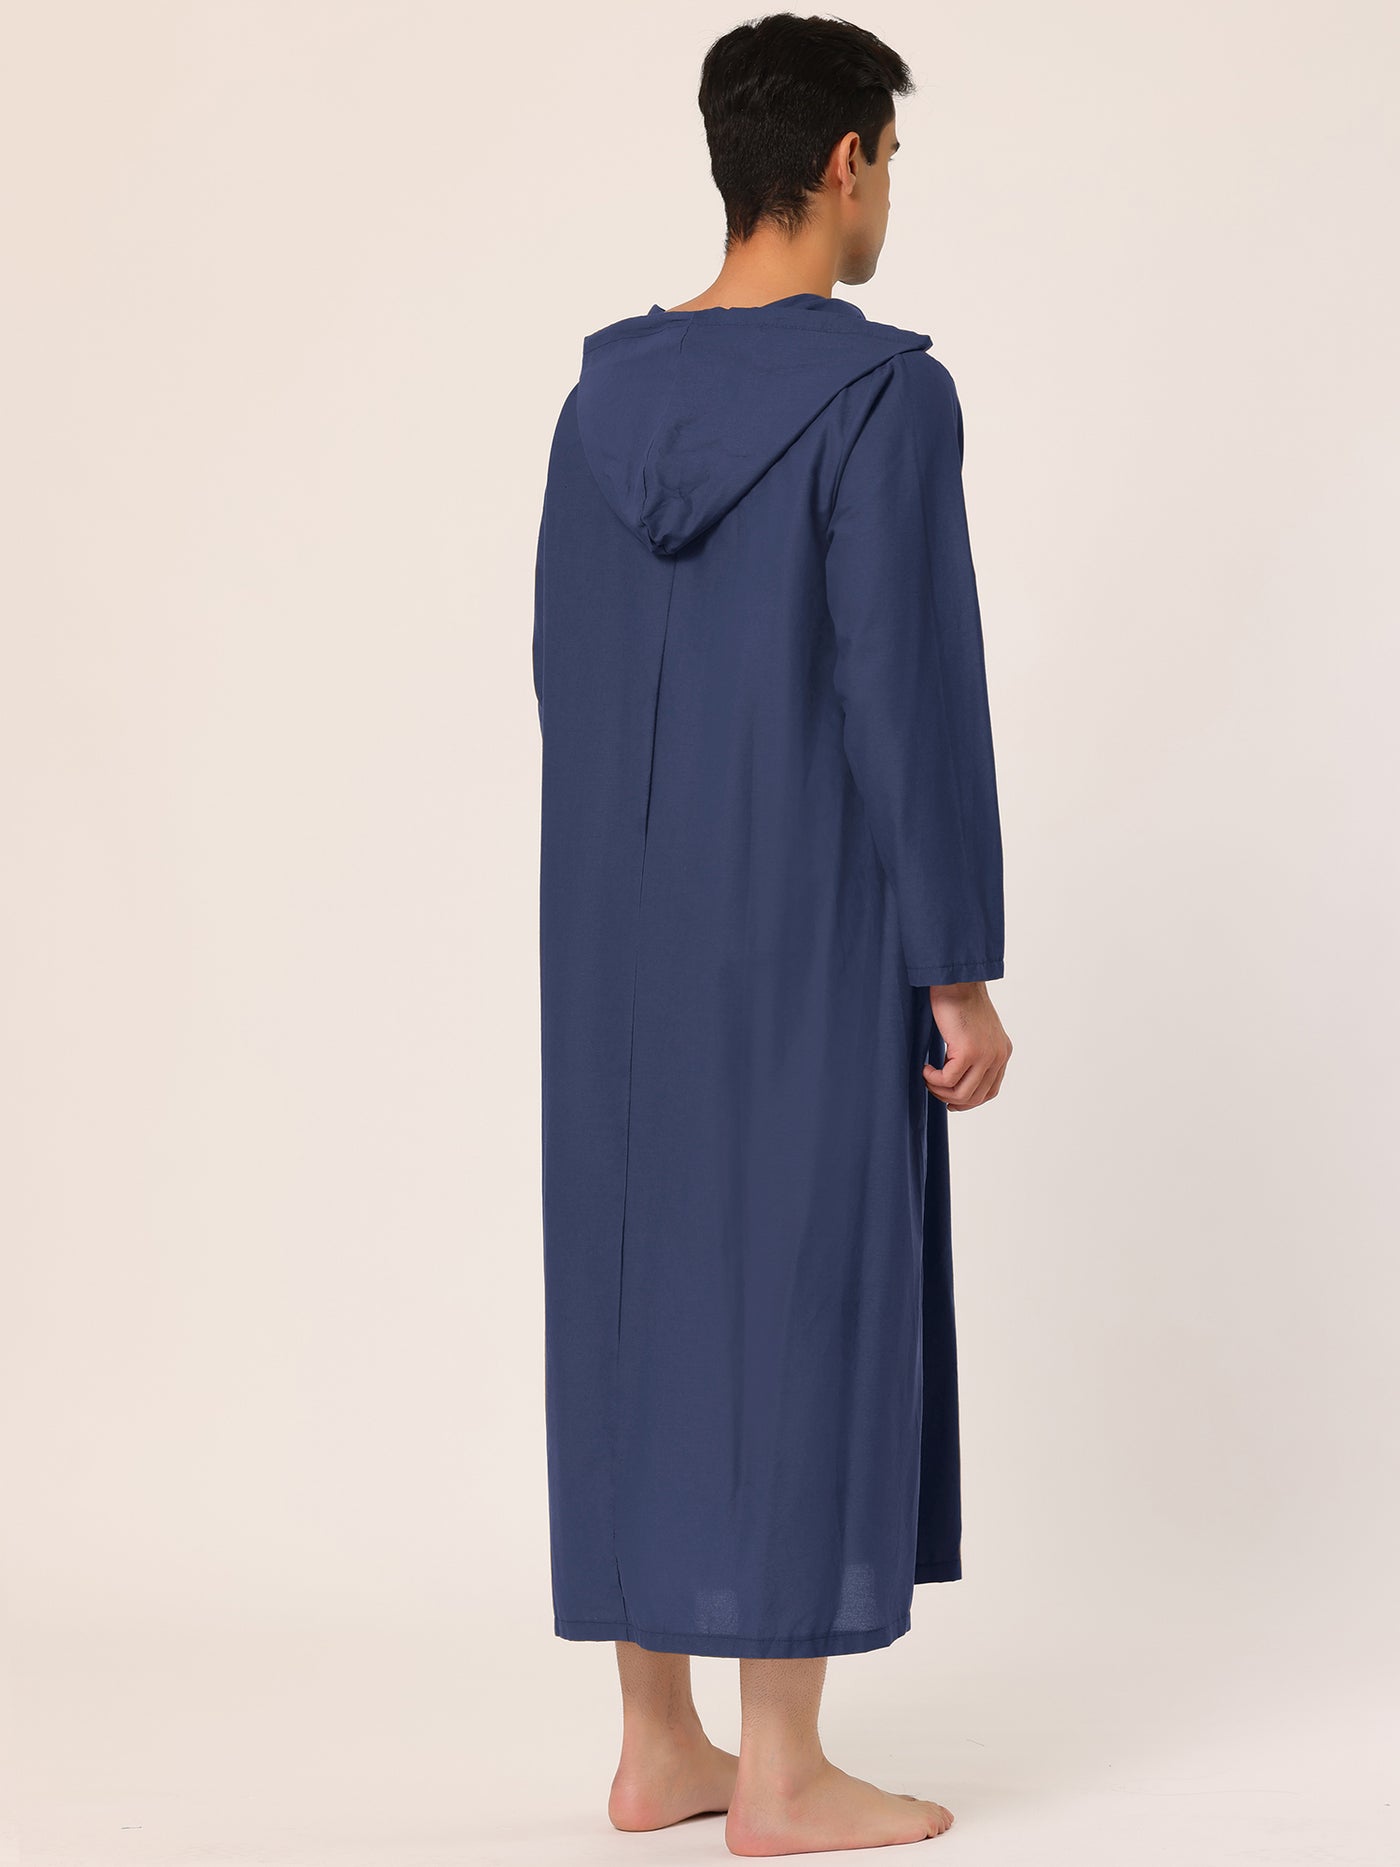 Bublédon Solid Long Sleeve Hooded Loungewear Nightdress